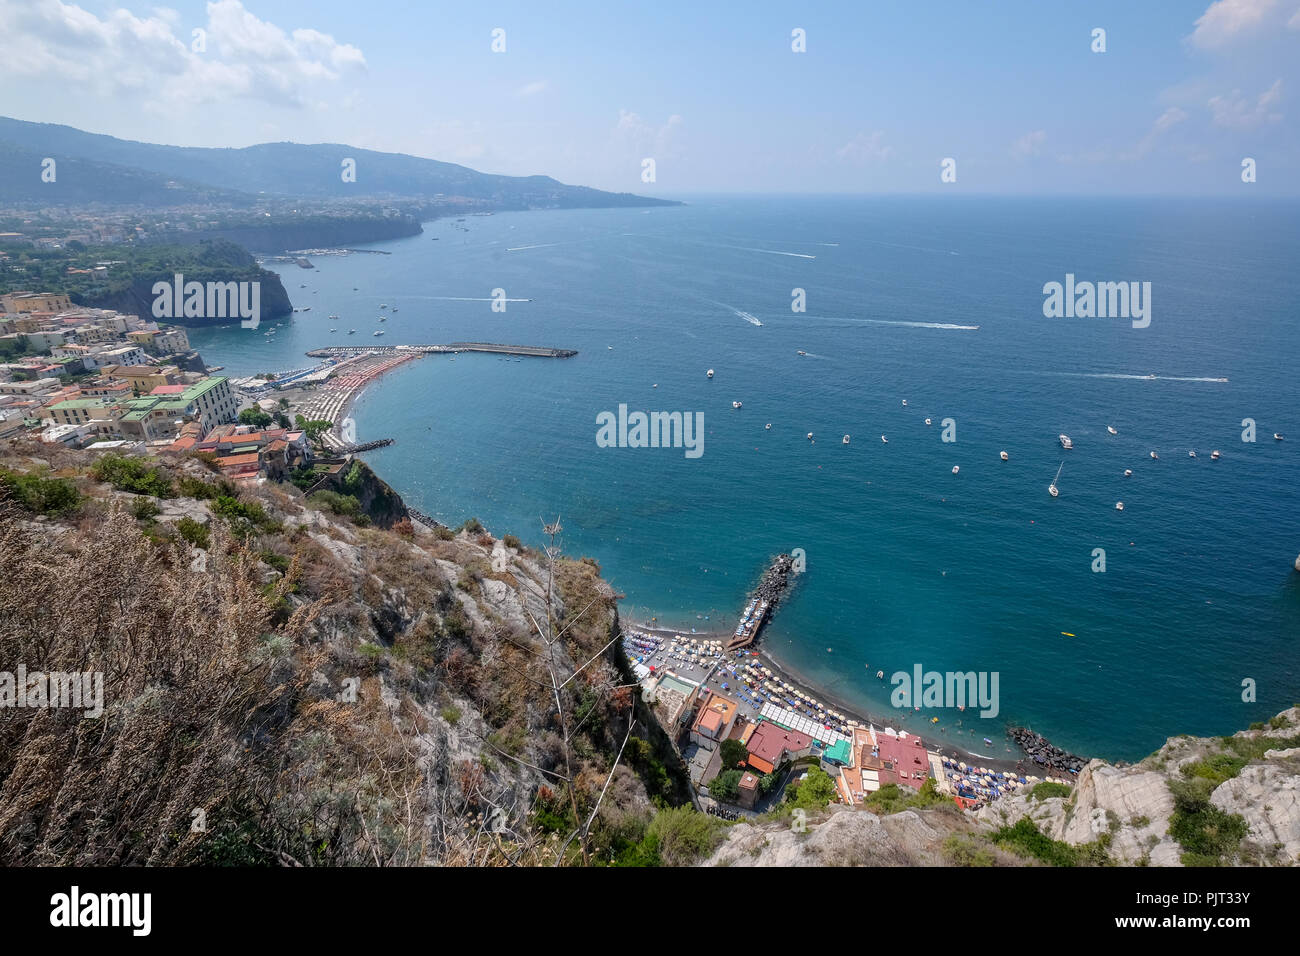 Amalfi coast view near Positano, Italy Stock Photo